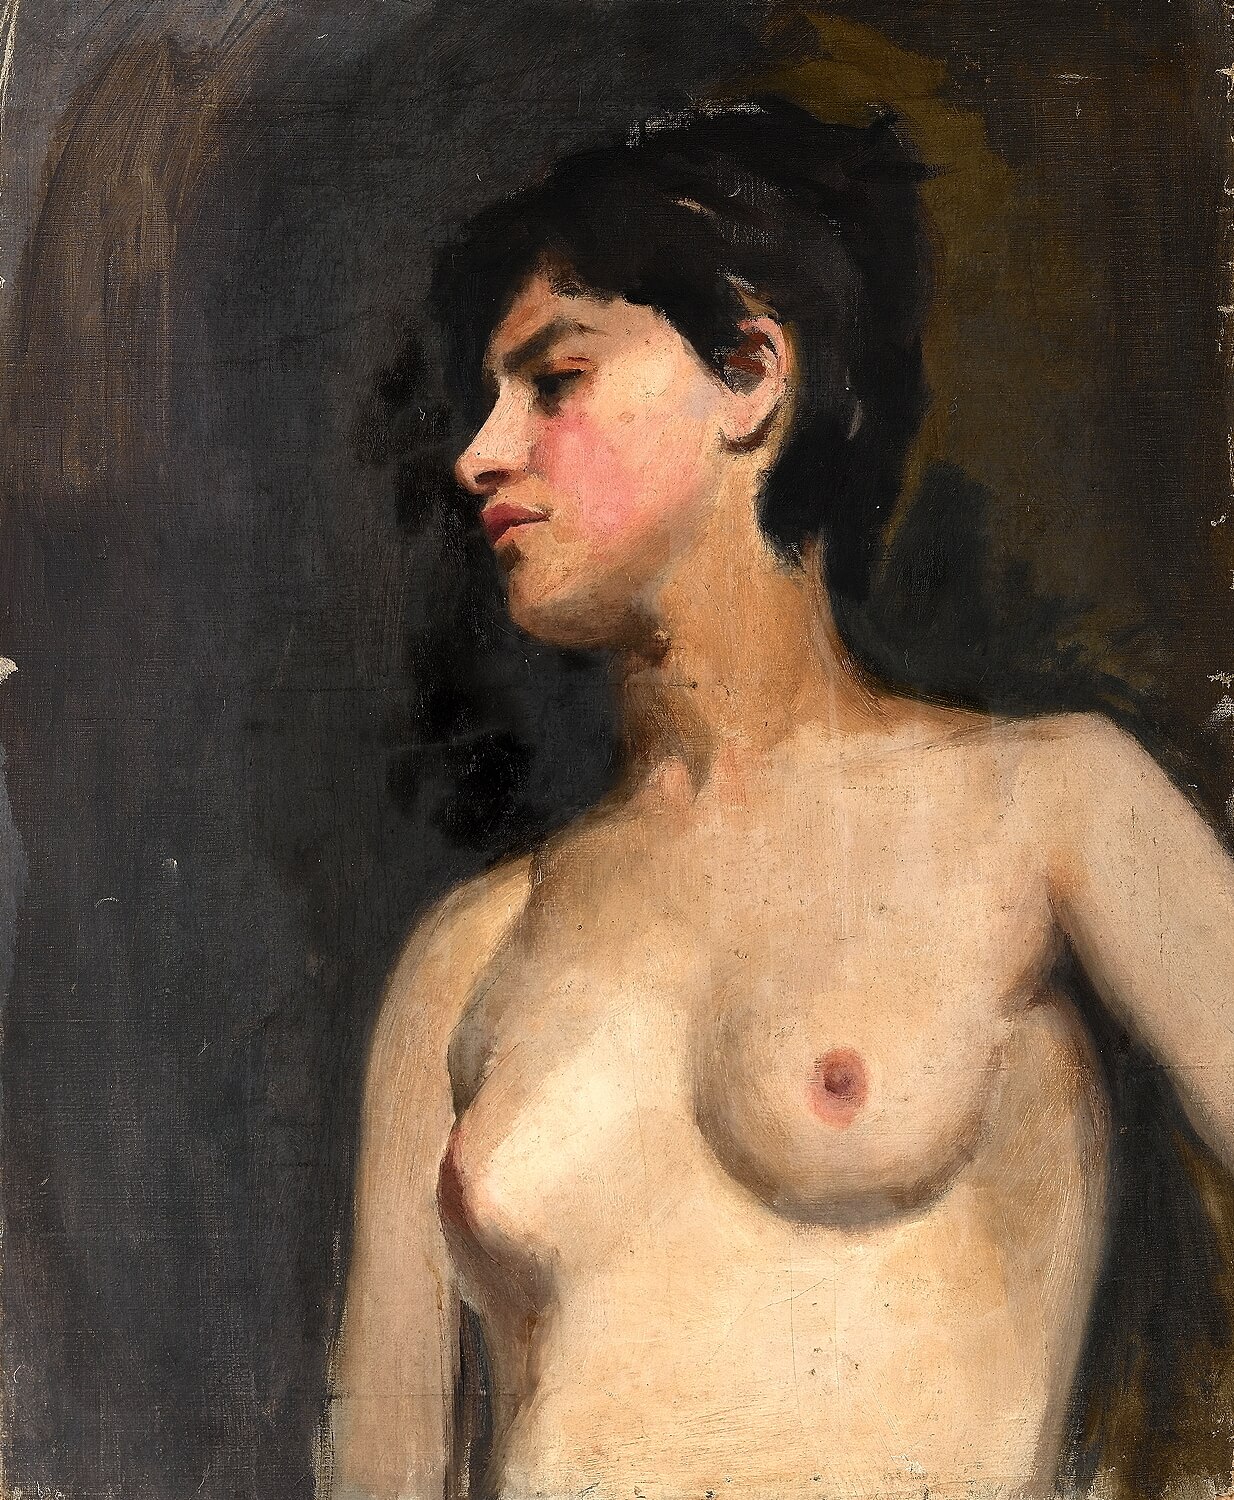 Albert de Belleroche - Bust lenght female nude